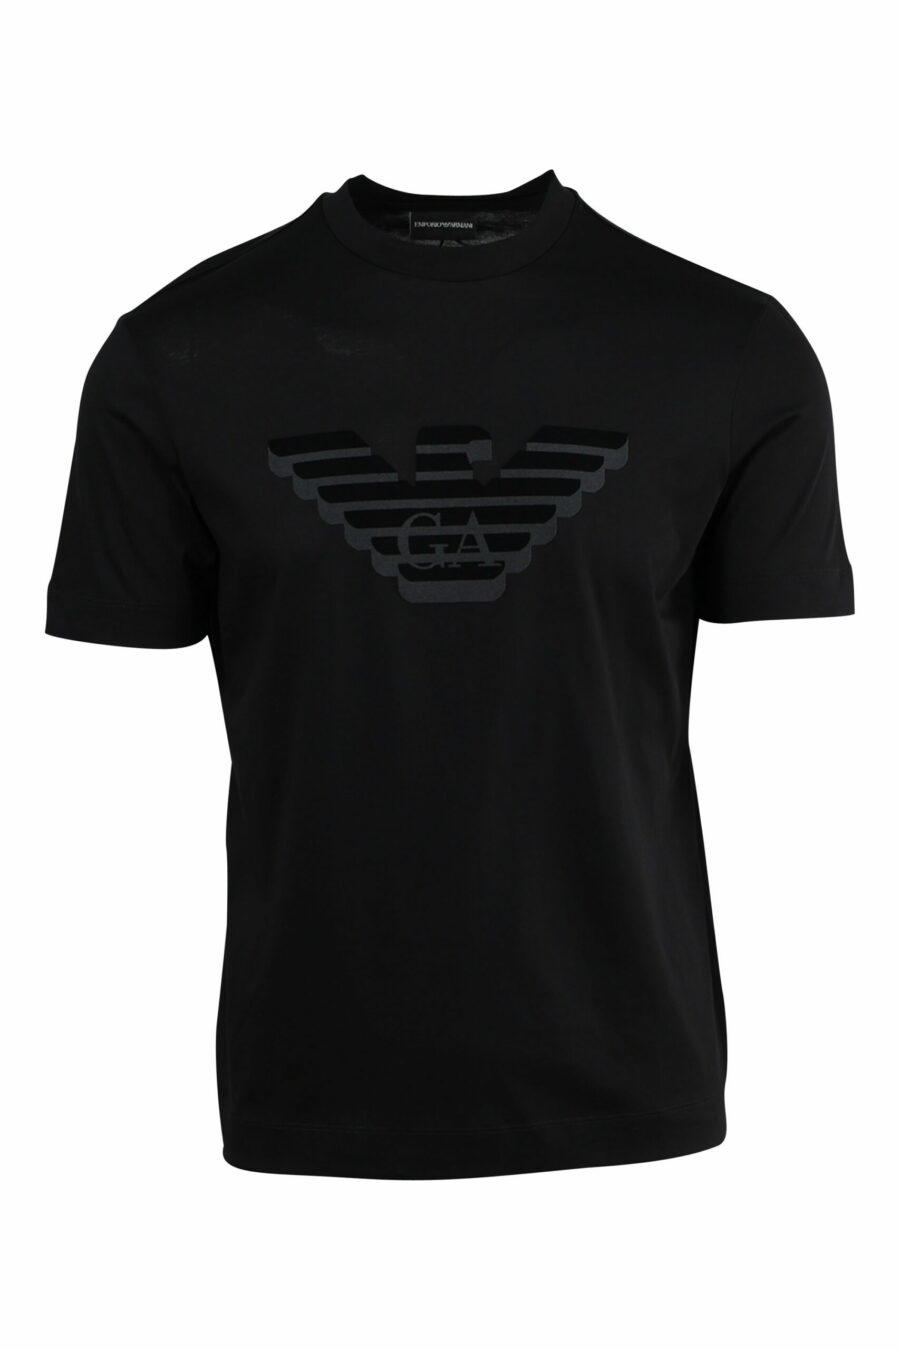 Black T-shirt with embossed eagle maxilogo - 8057970433729 scaled